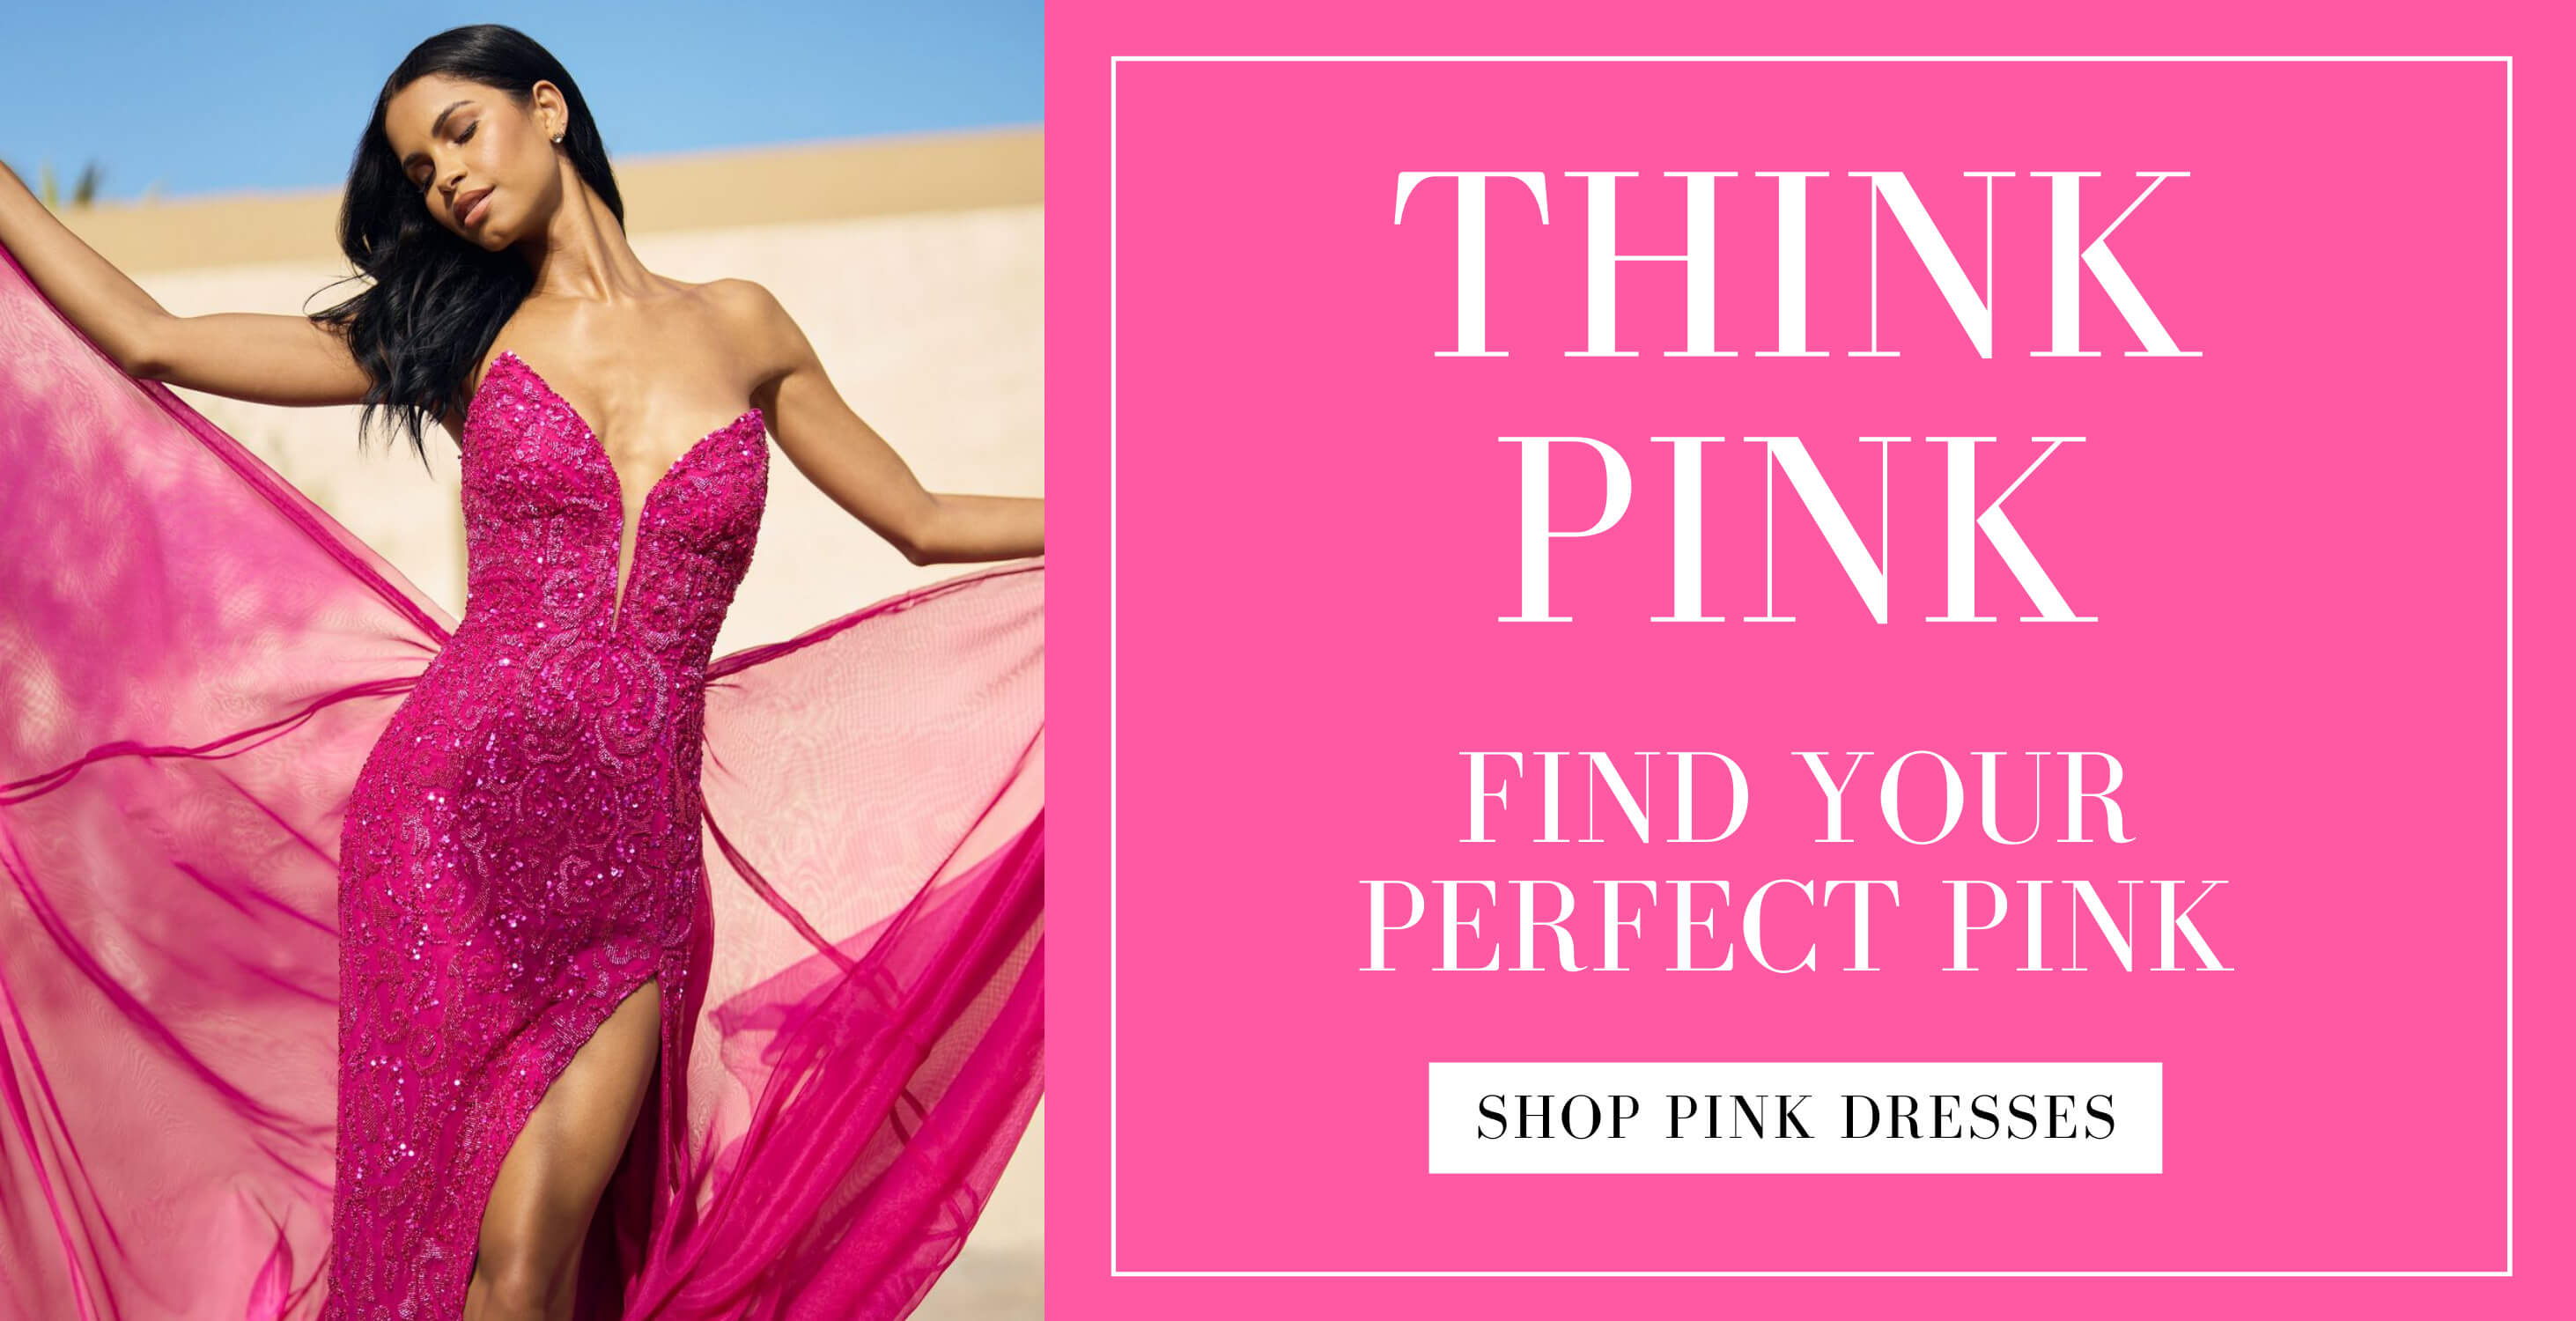 Think Pink dresses. Desktop Image